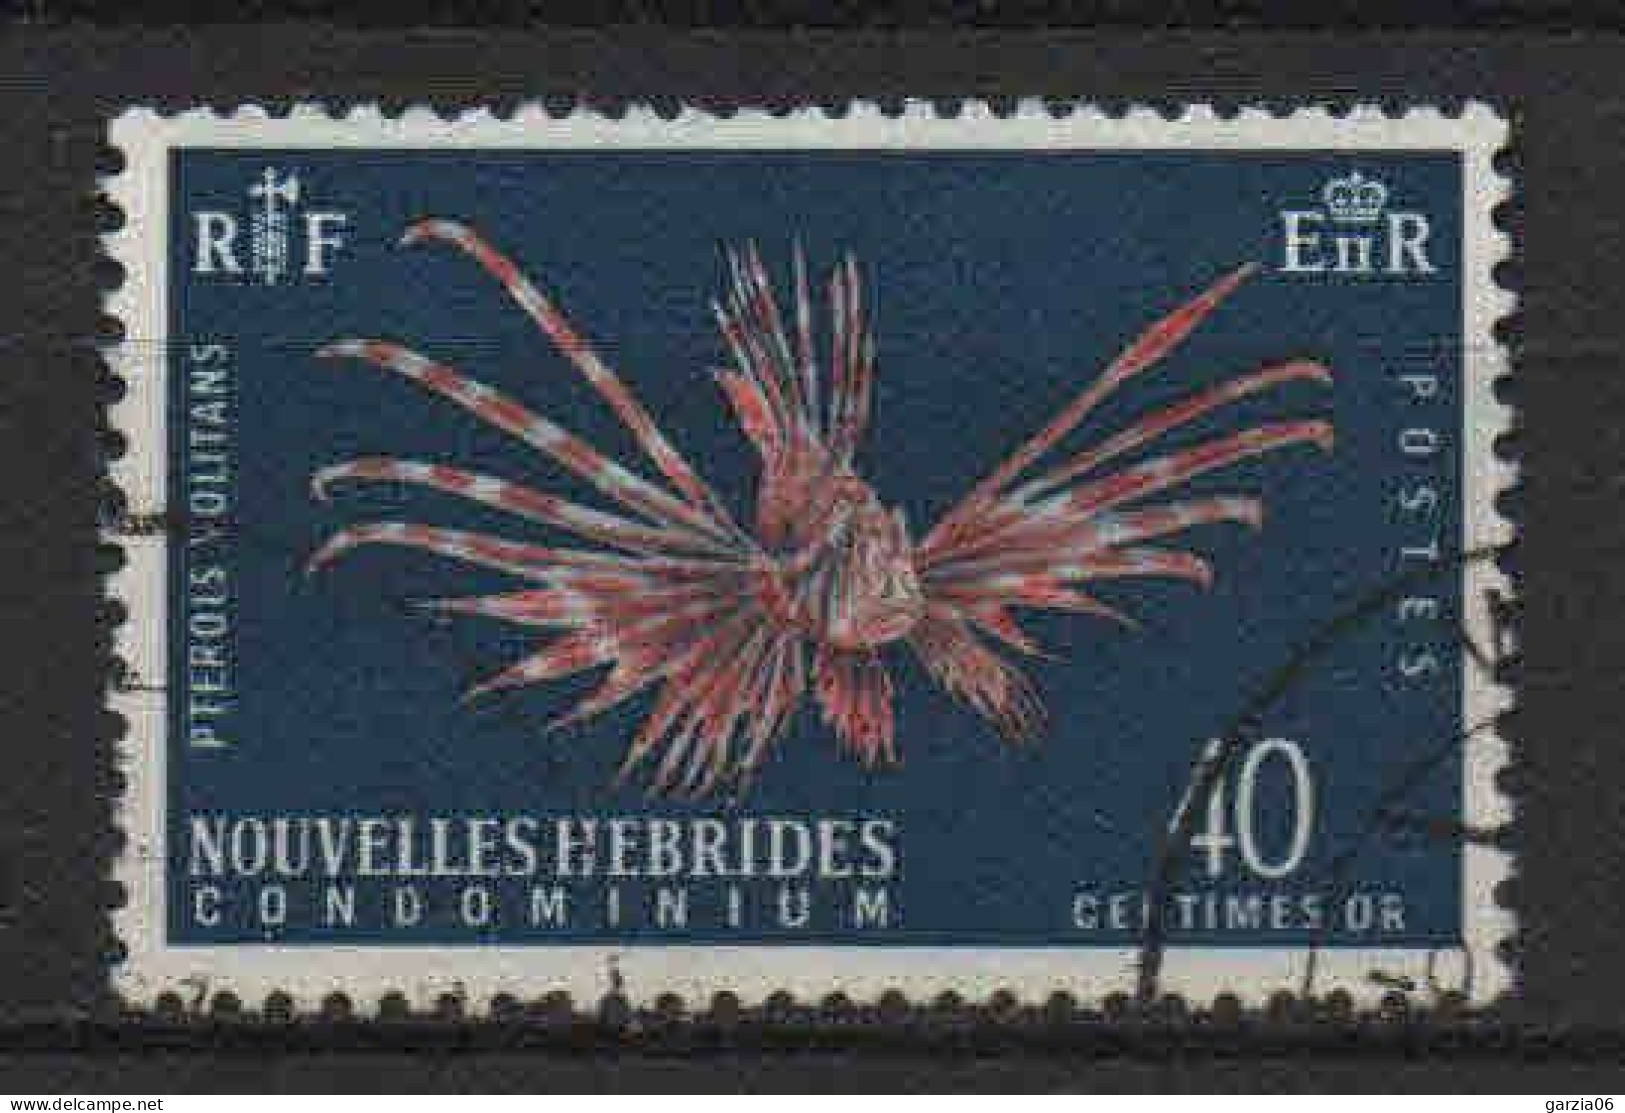 Nouvelles Hébrides - 1965 - Faune Et Flore  - N° 217 - Oblit - Used - Oblitérés